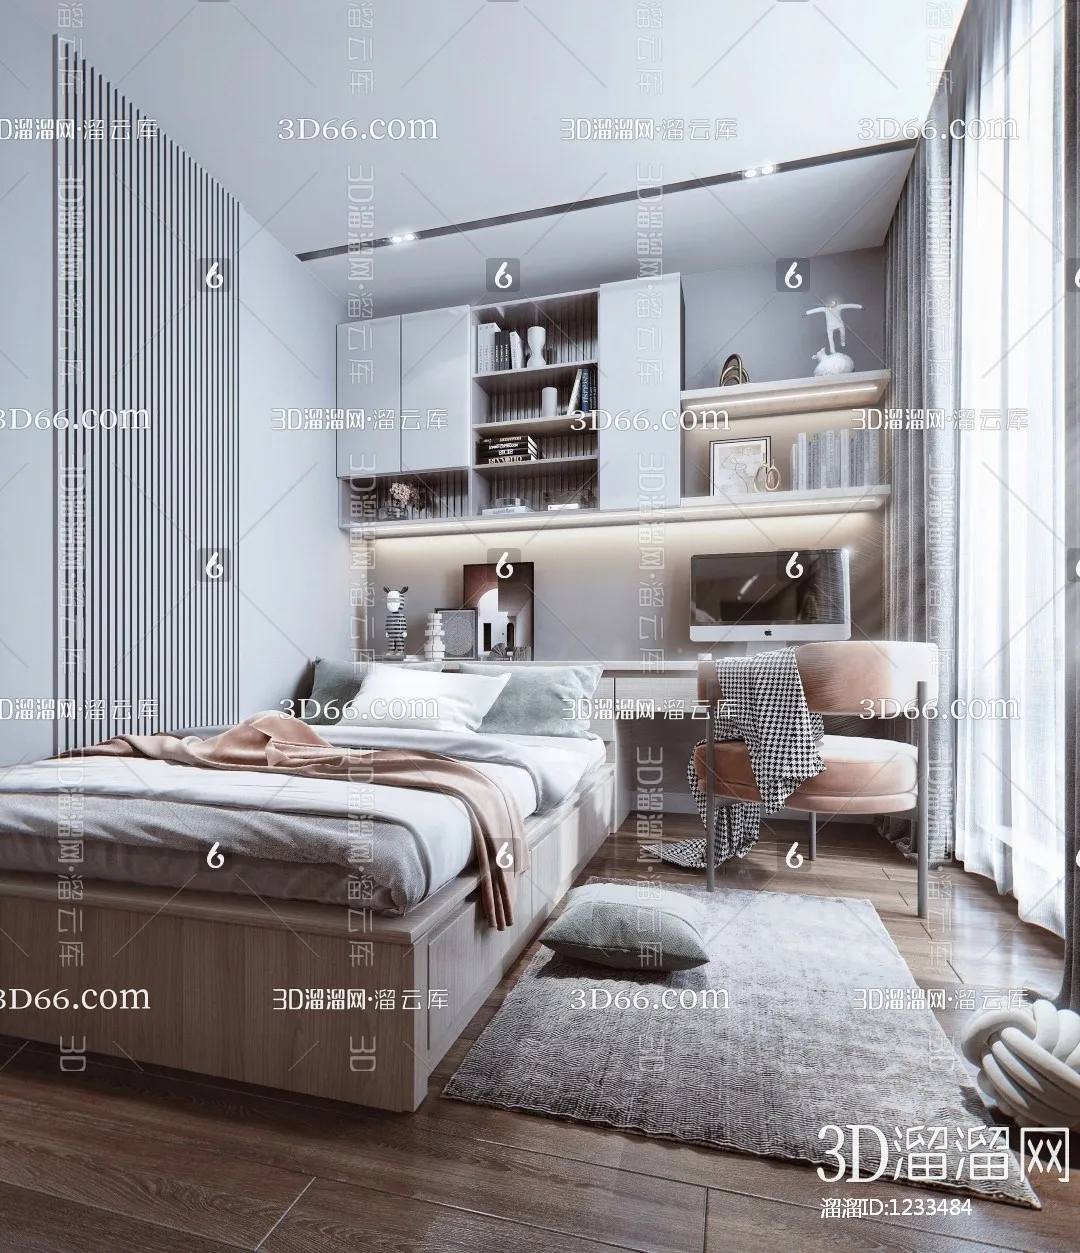 Bedroom 3D Scenes – 0220